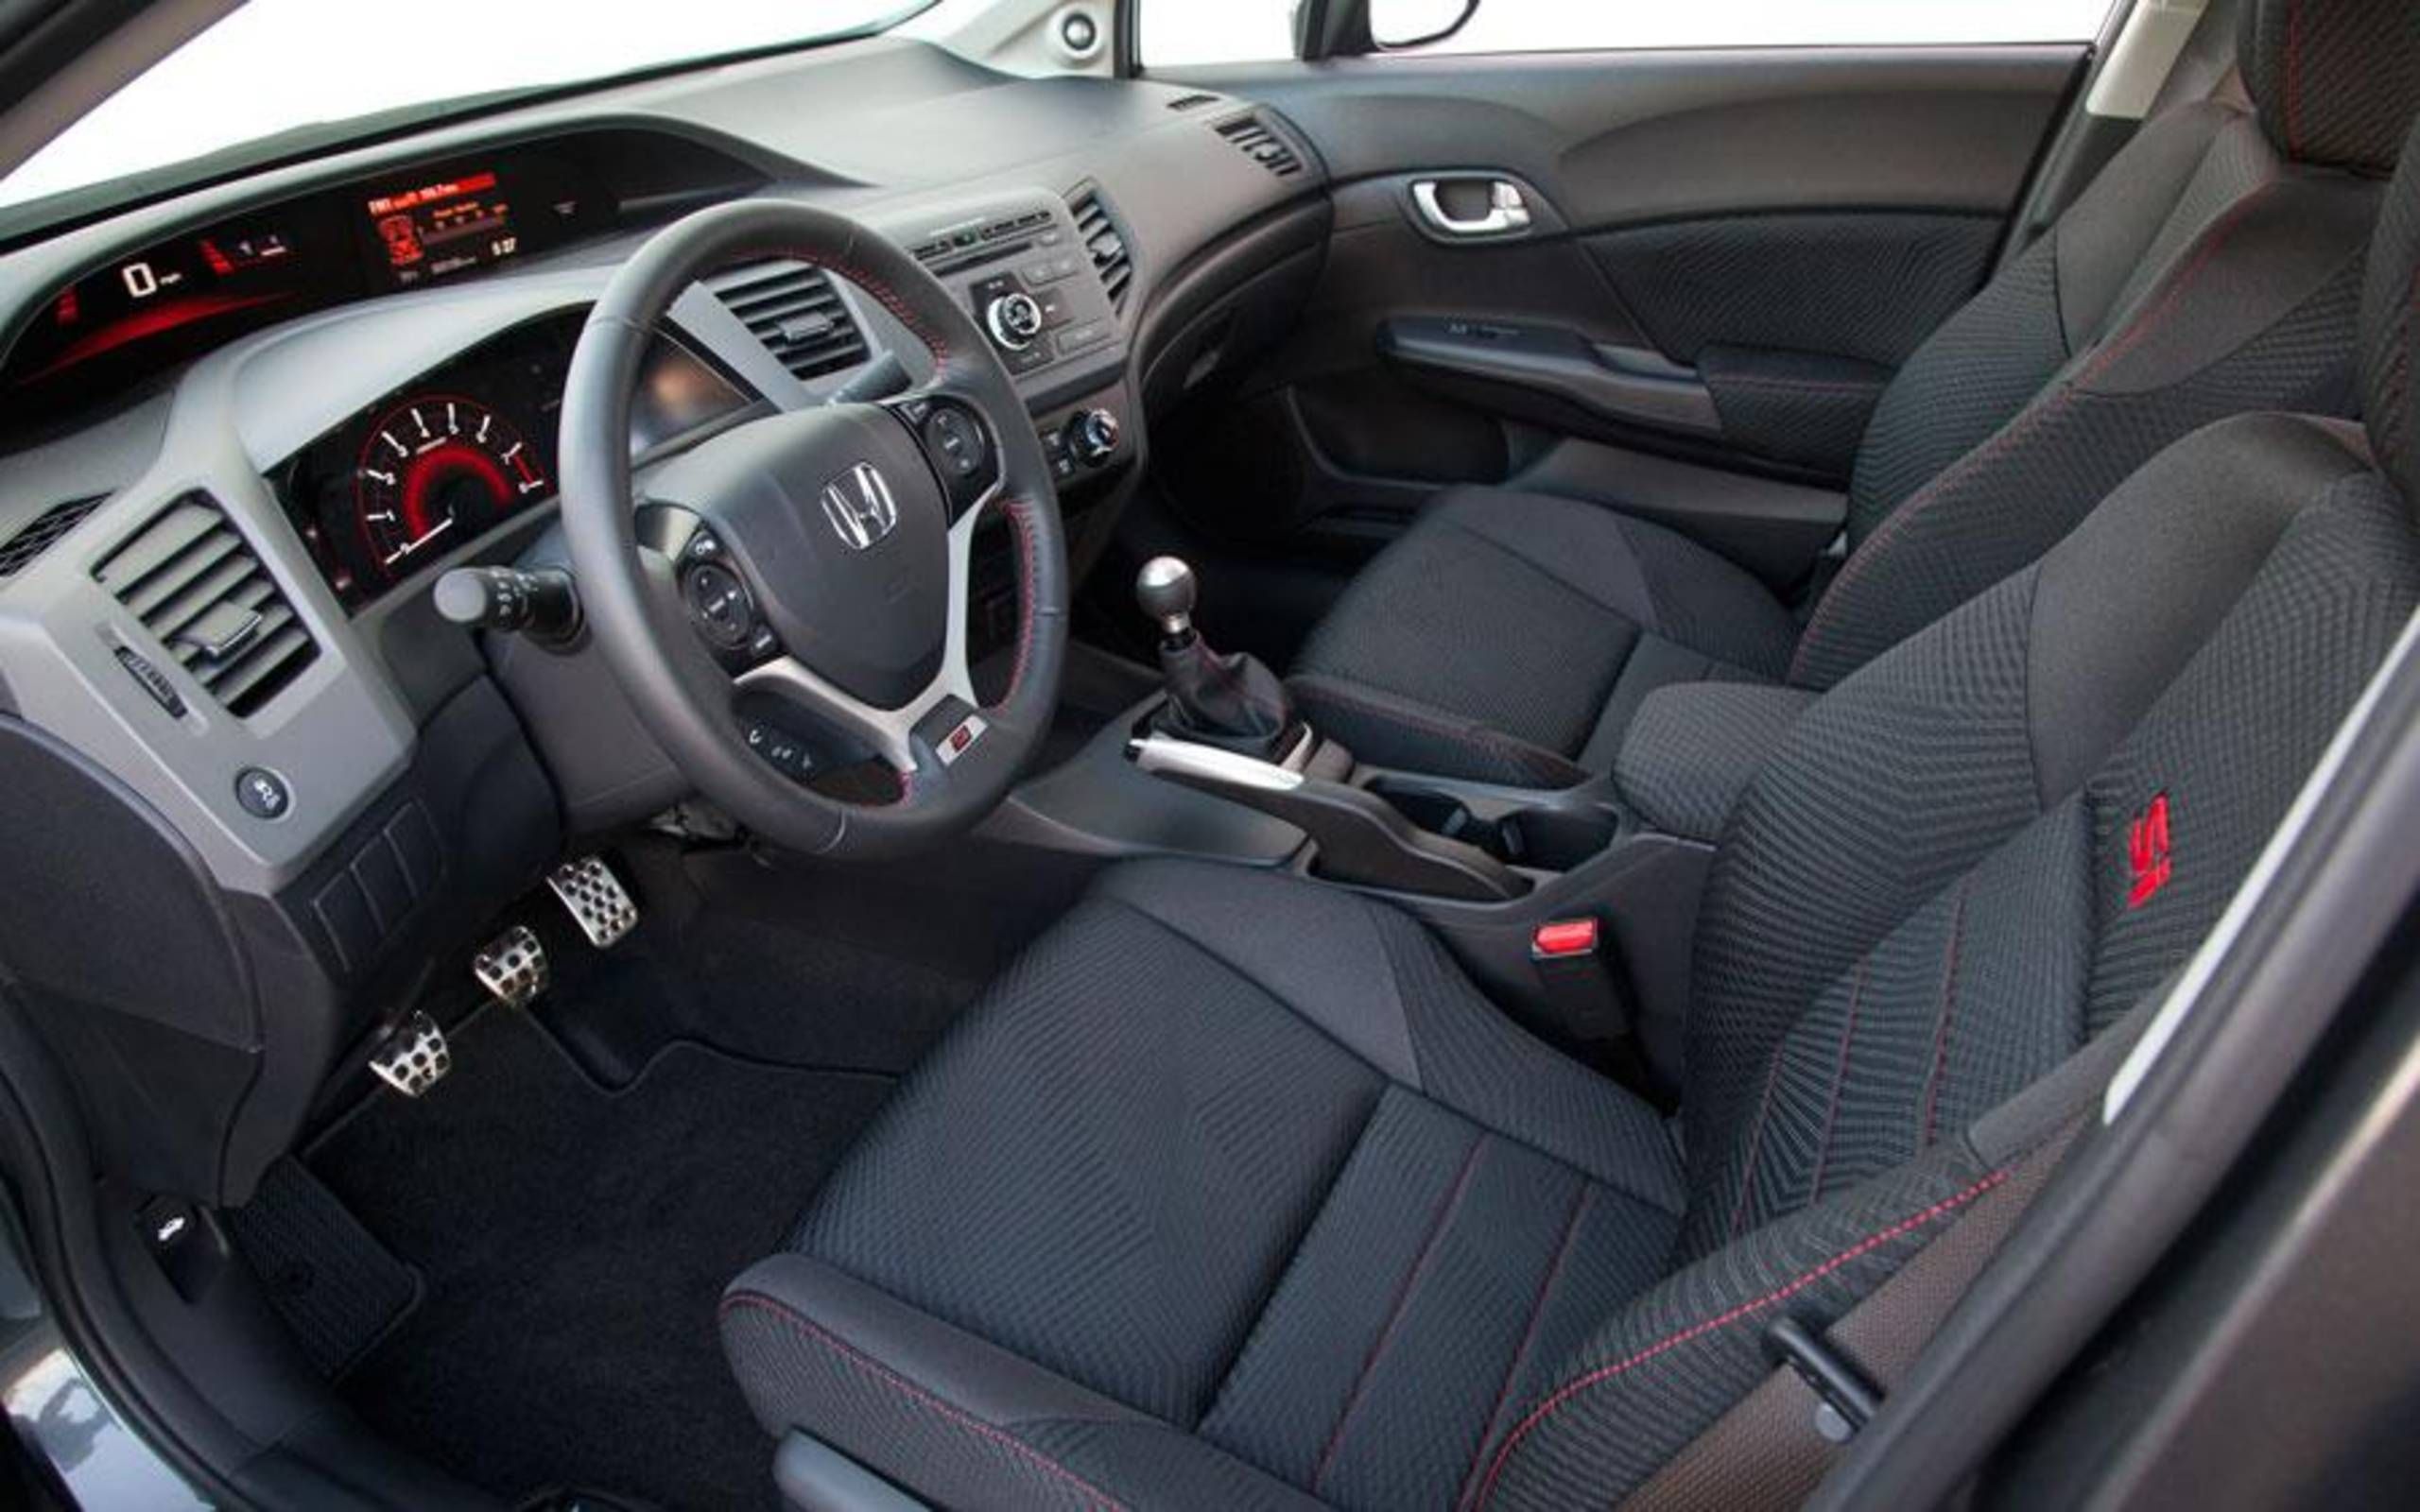 Honda Civic Si Navi review notes: Top performing Civic still plagued substandard interior